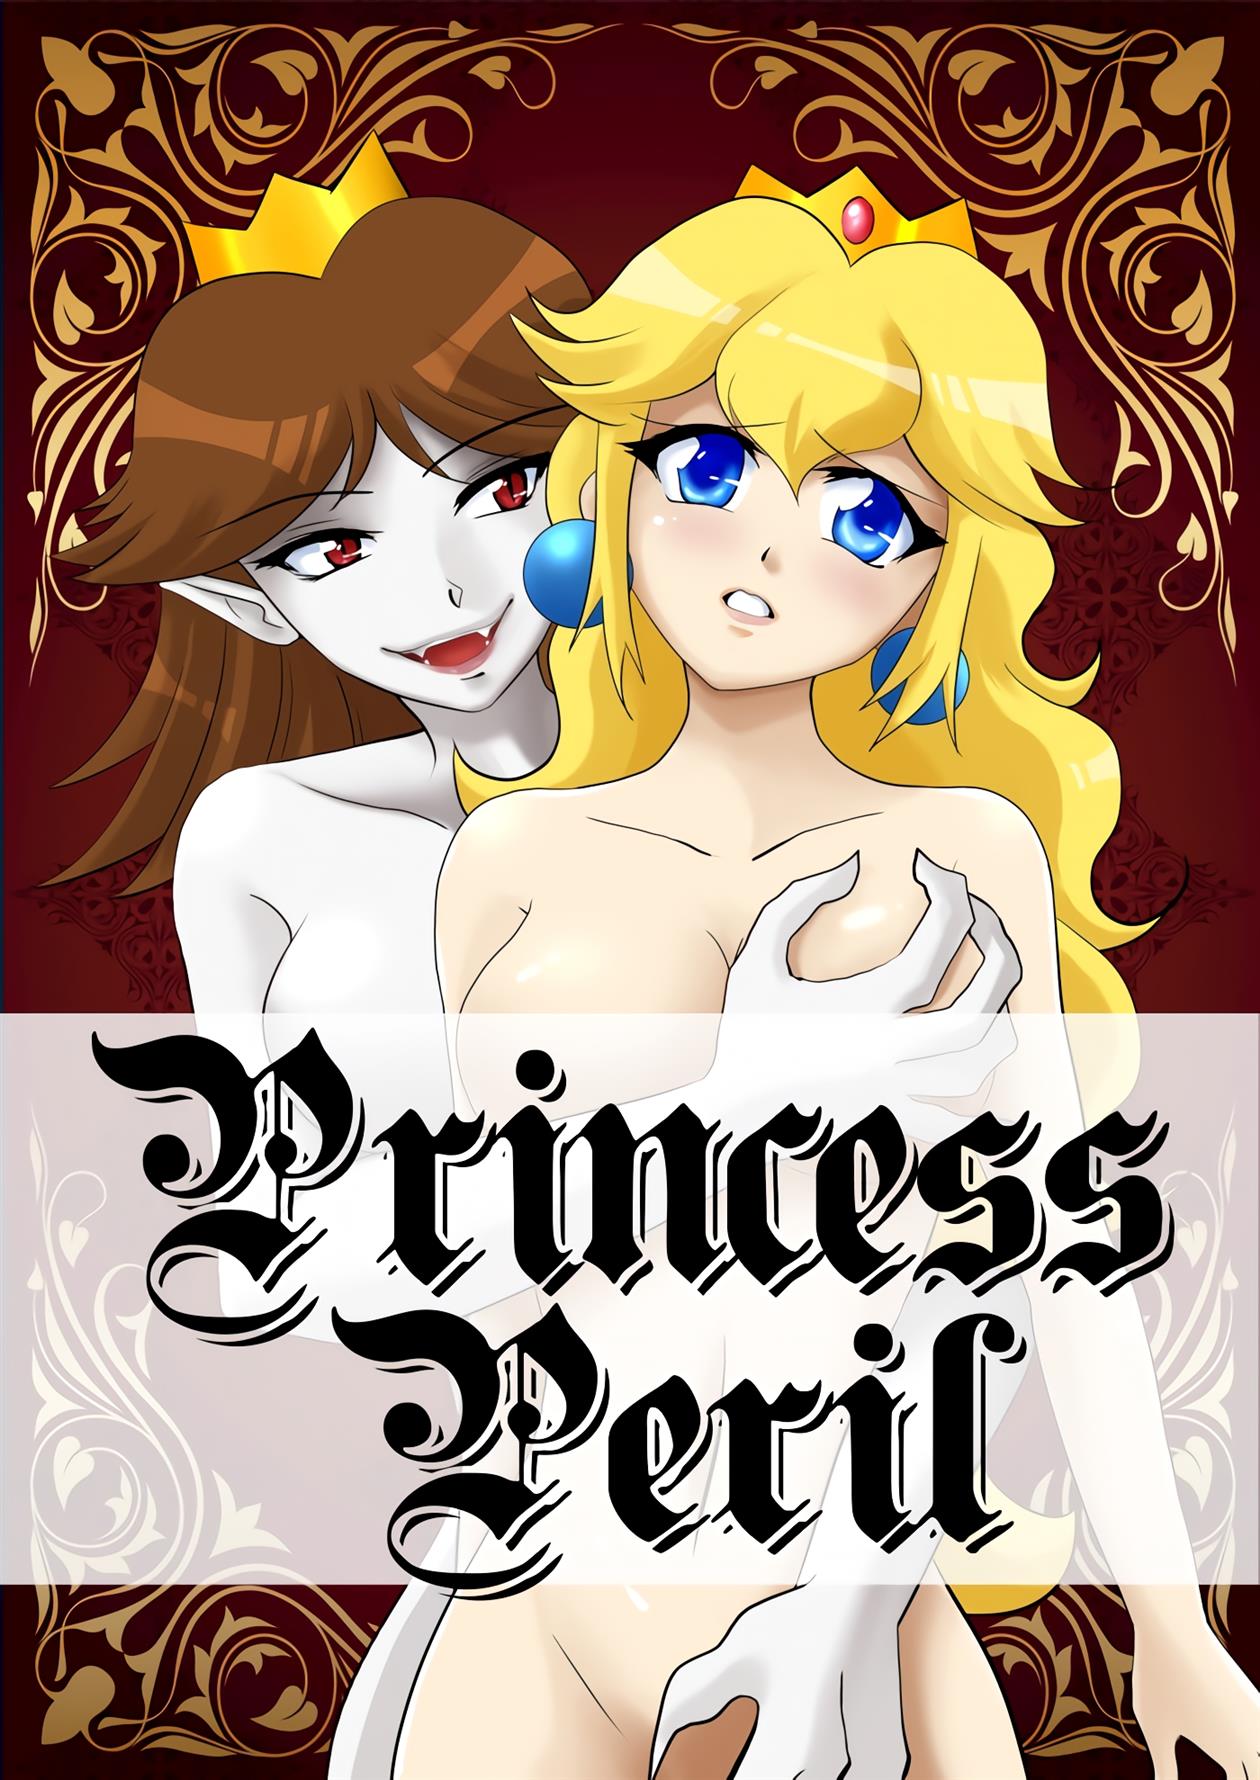 Mario-Bros-Pornô-Princesa-em-perigo-1 